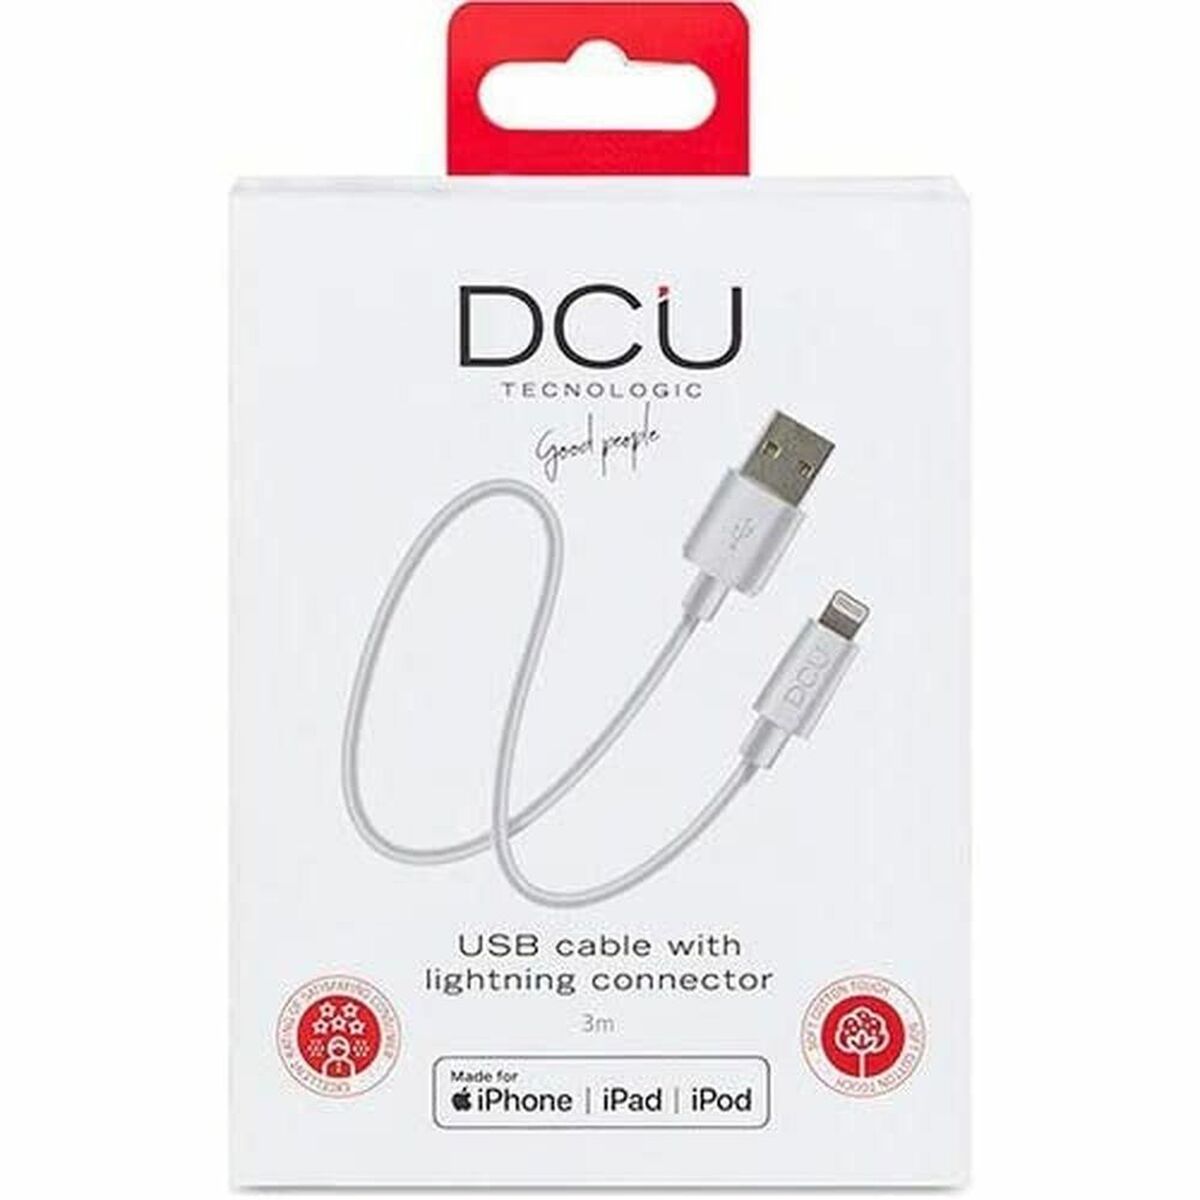 USB-Kabel für das iPad/iPhone DCU 4R60057 Weiß 3 m - CA International  